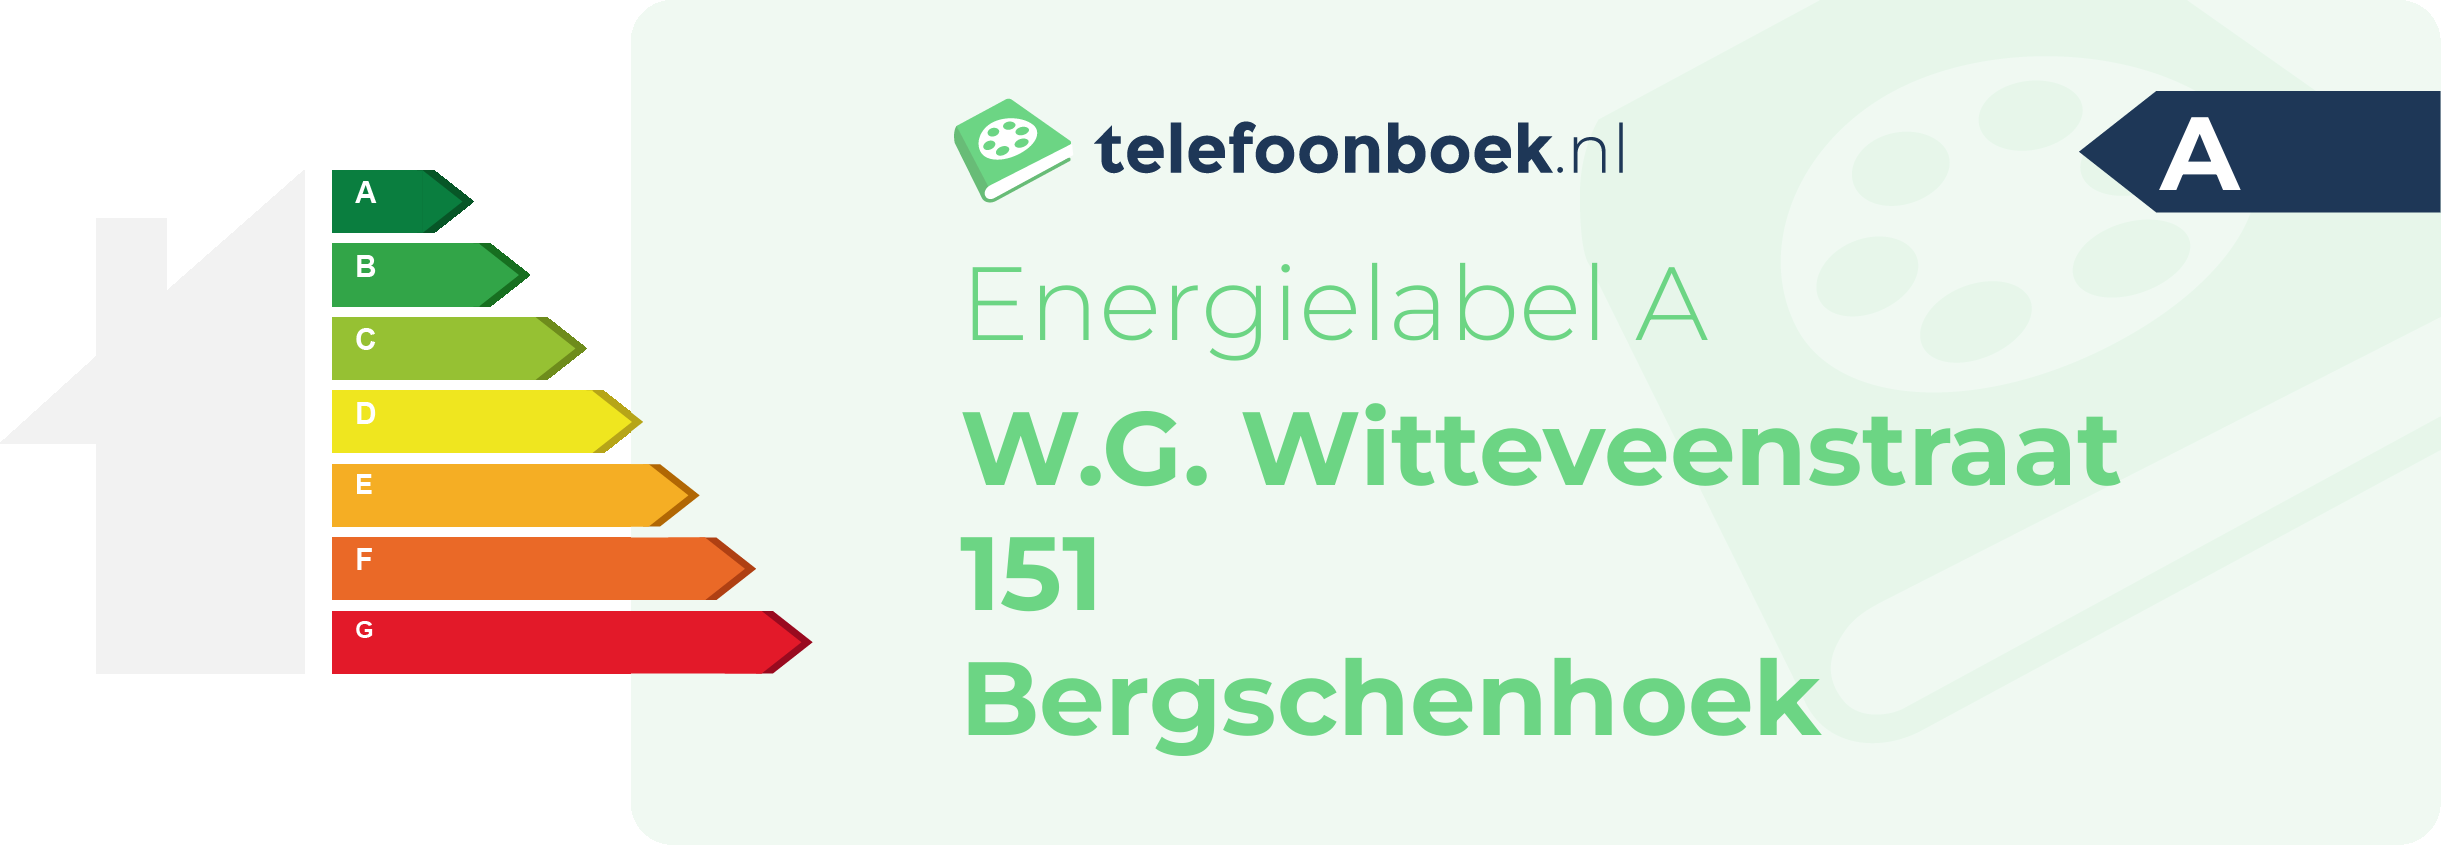 Energielabel W.G. Witteveenstraat 151 Bergschenhoek